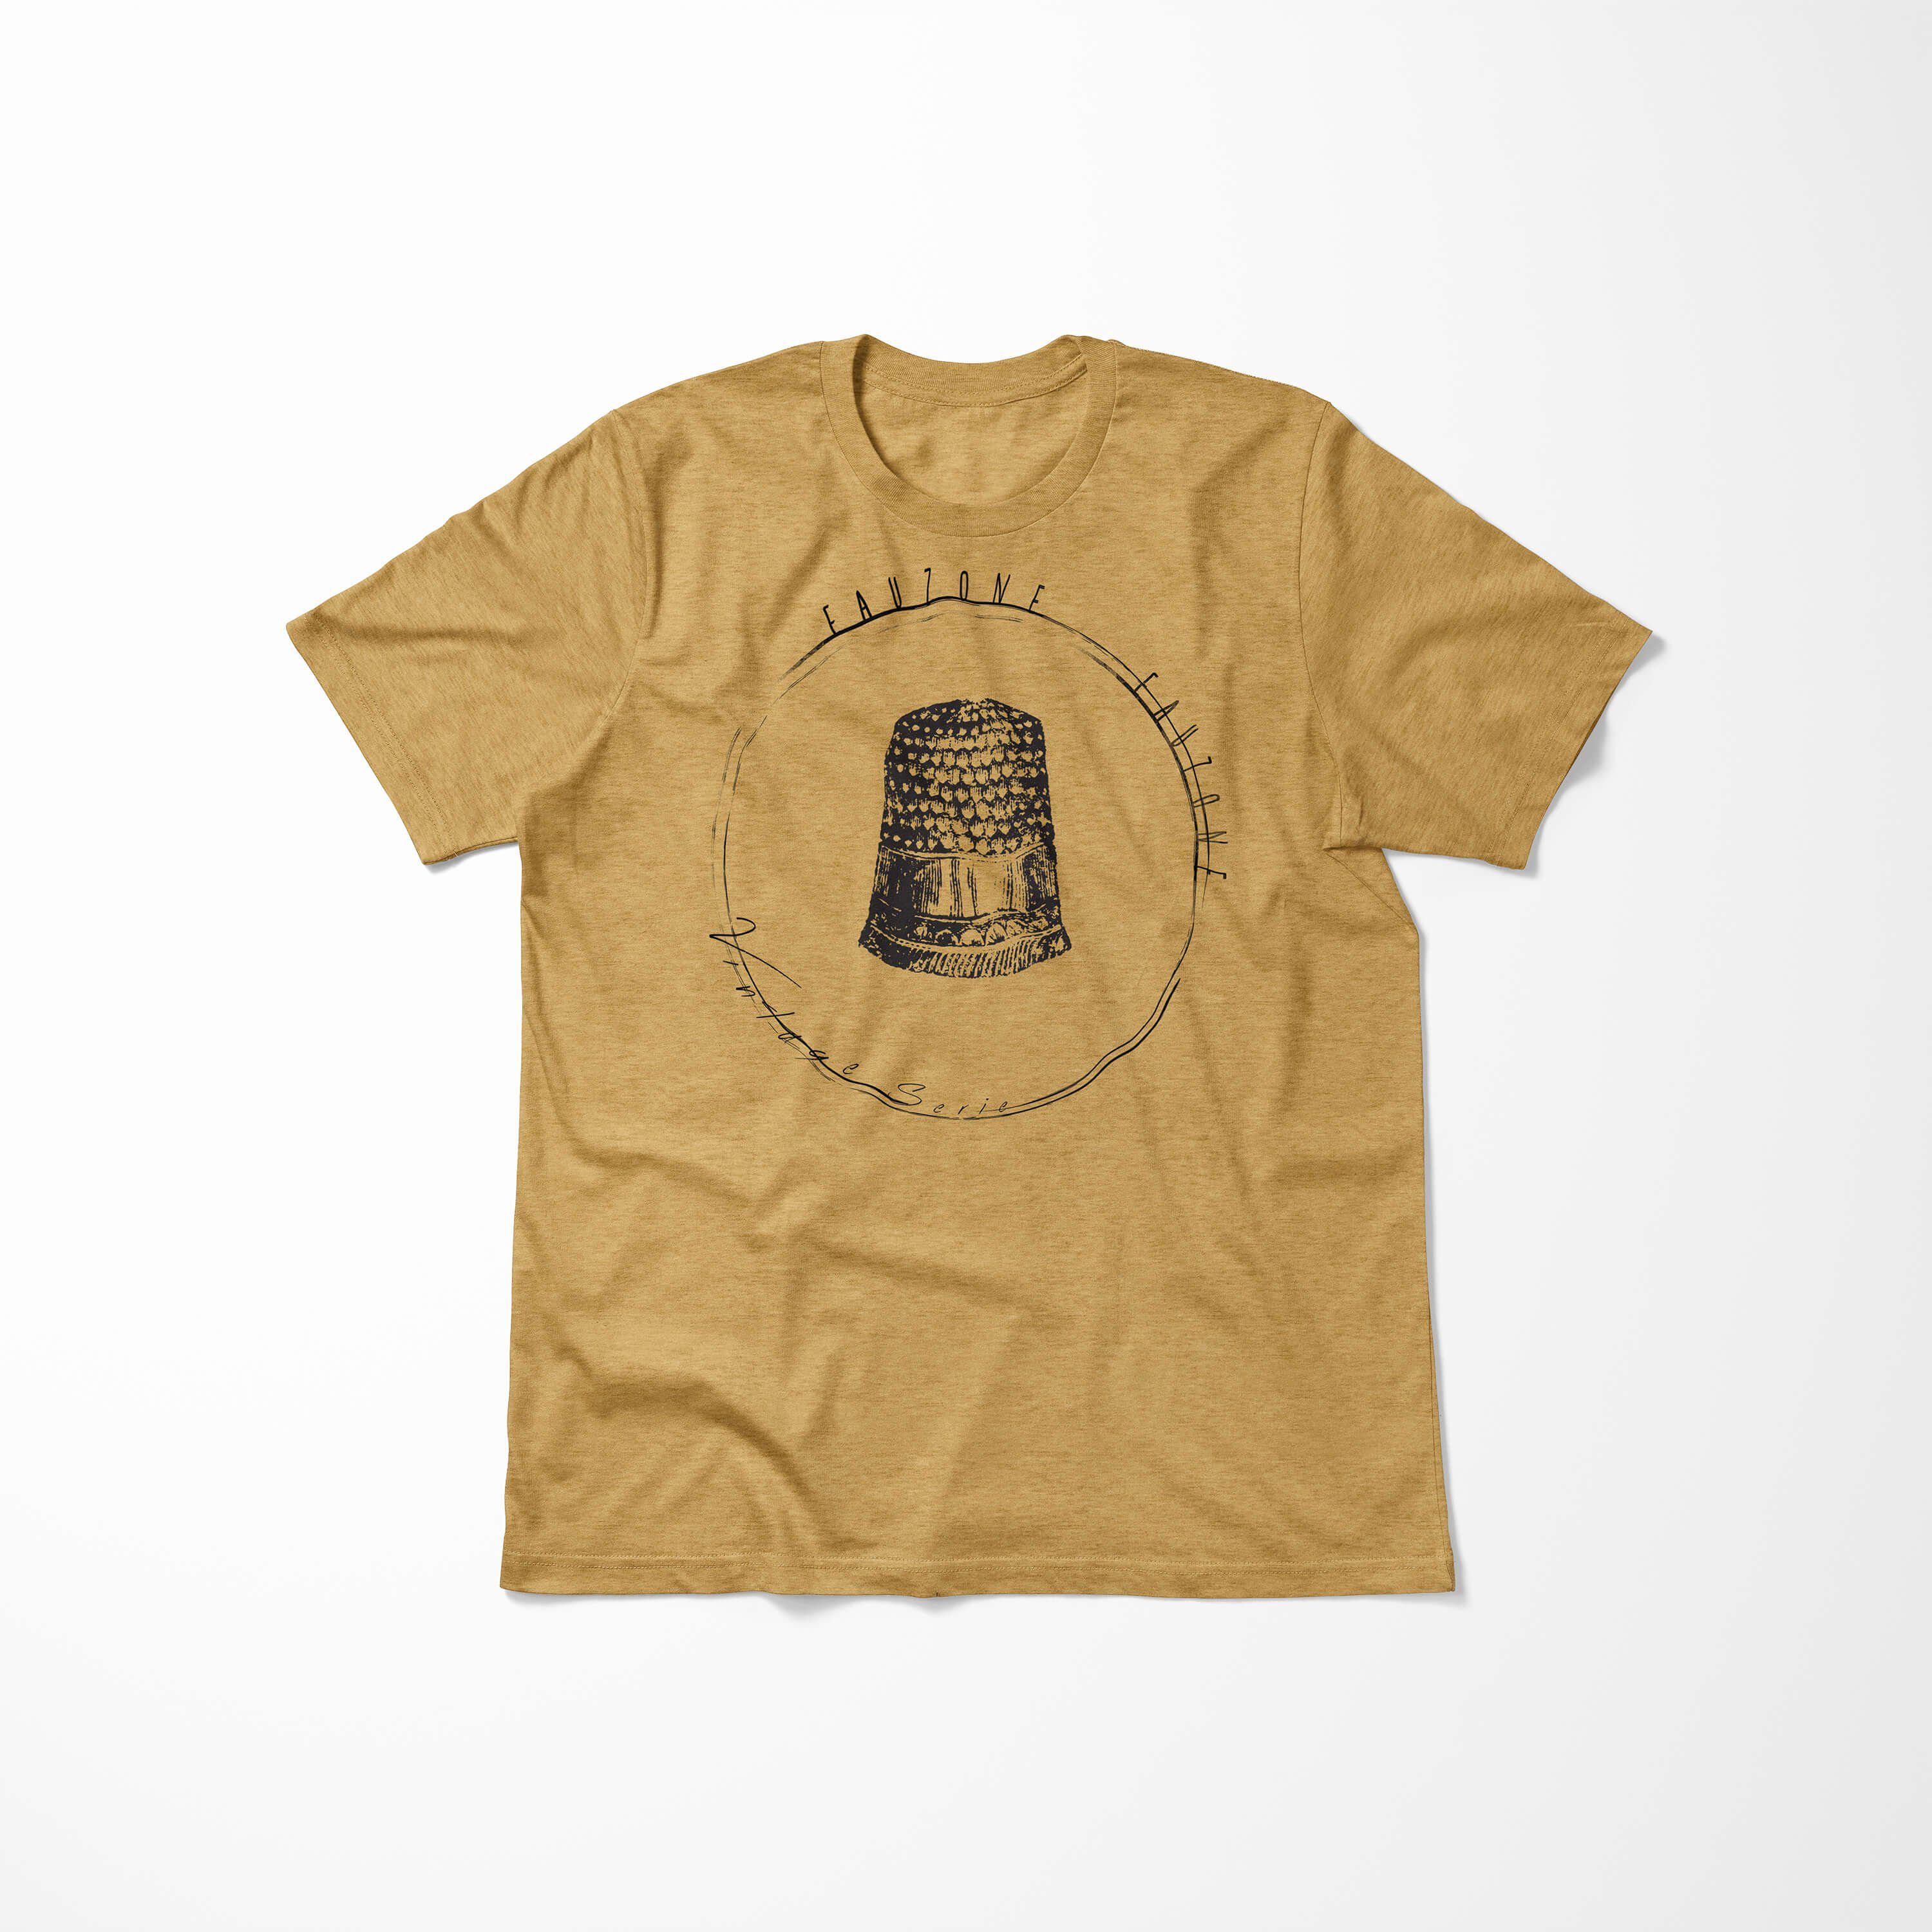 Sinus Art T-Shirt Antique T-Shirt Fingerhut Herren Vintage Gold